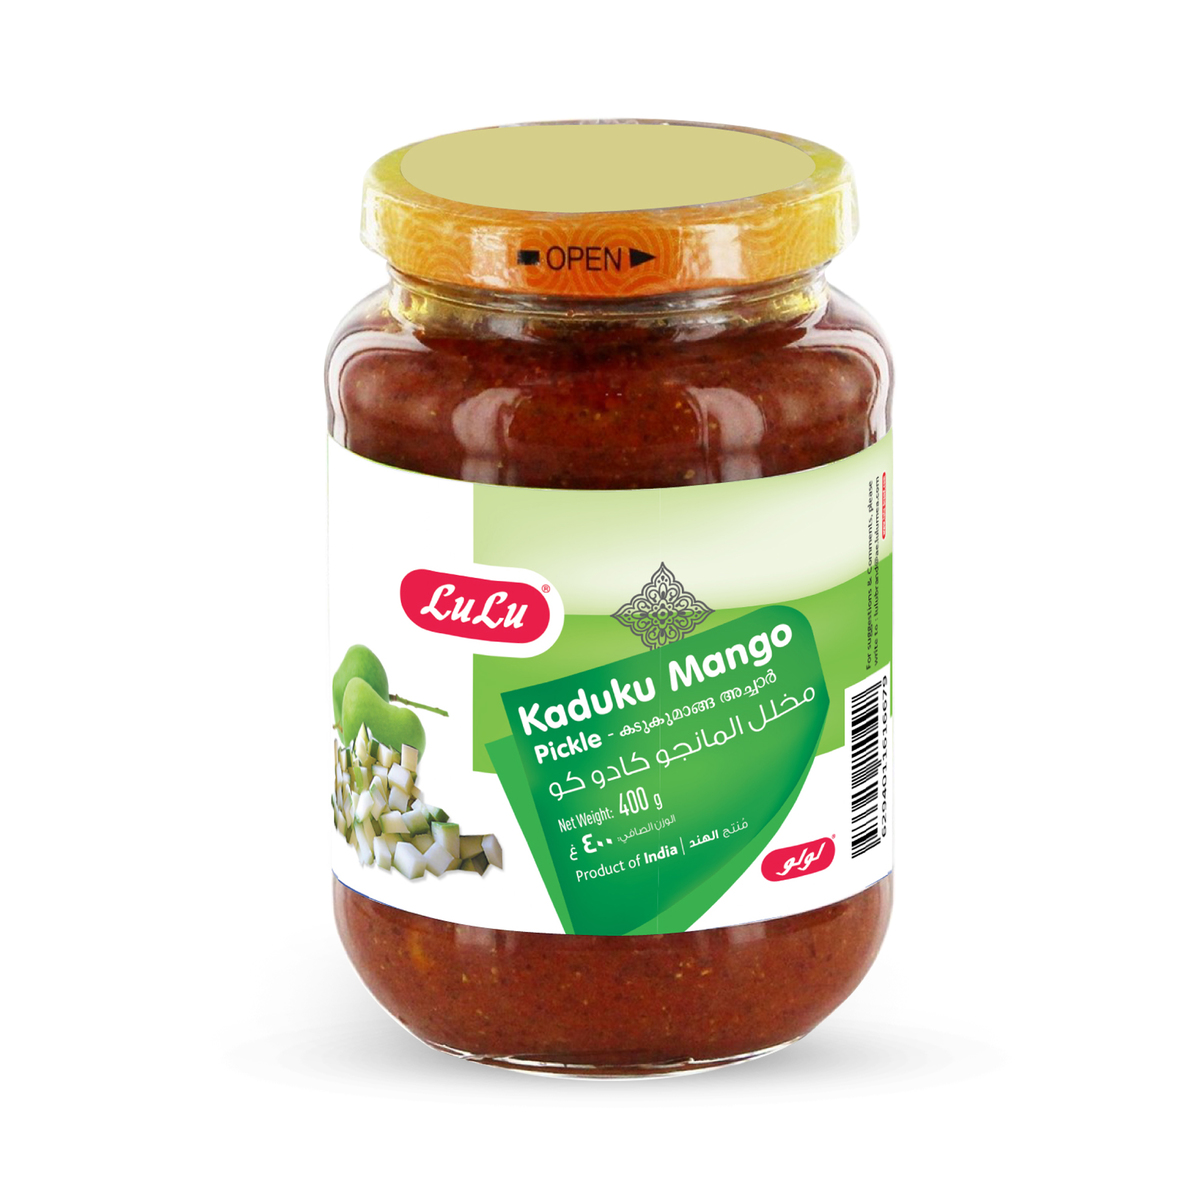 Lulu Kaduku Mango Pickle 400g